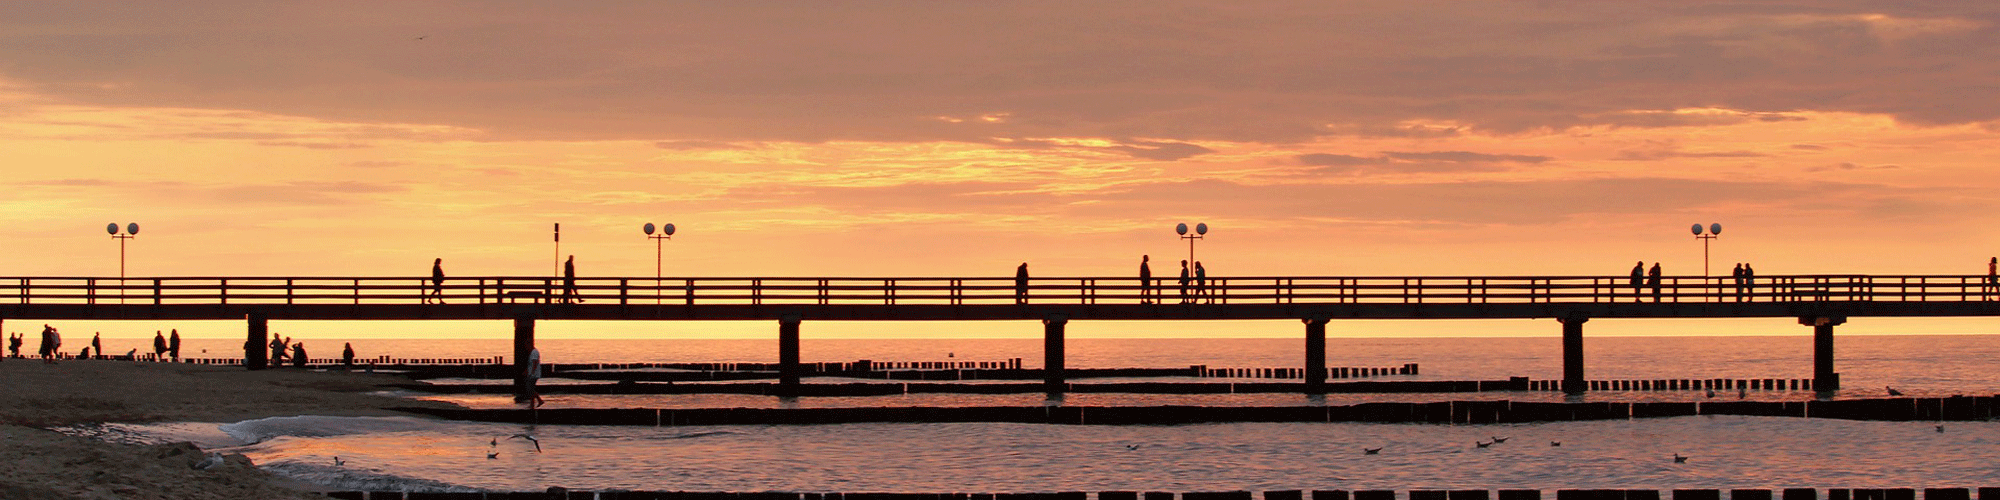 Sonnenuntergang am Pier von Kühlungsborn